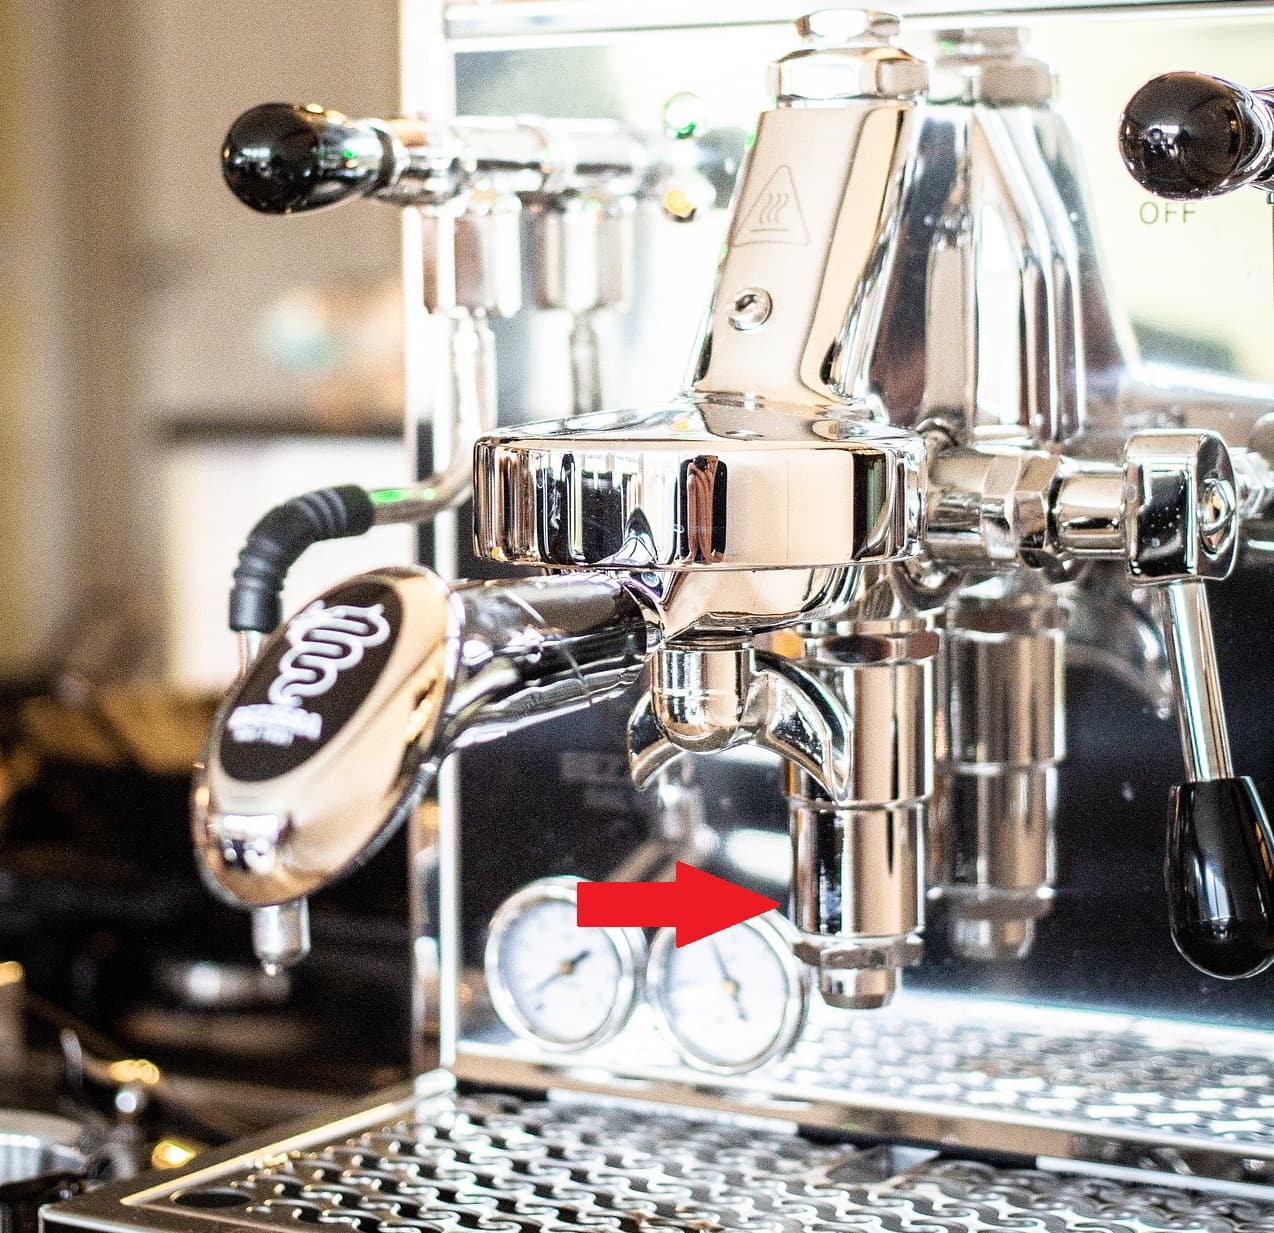 Espressomaschine in Nahaufnahme mit rotem Pfeil, der auf Bypass zeigt